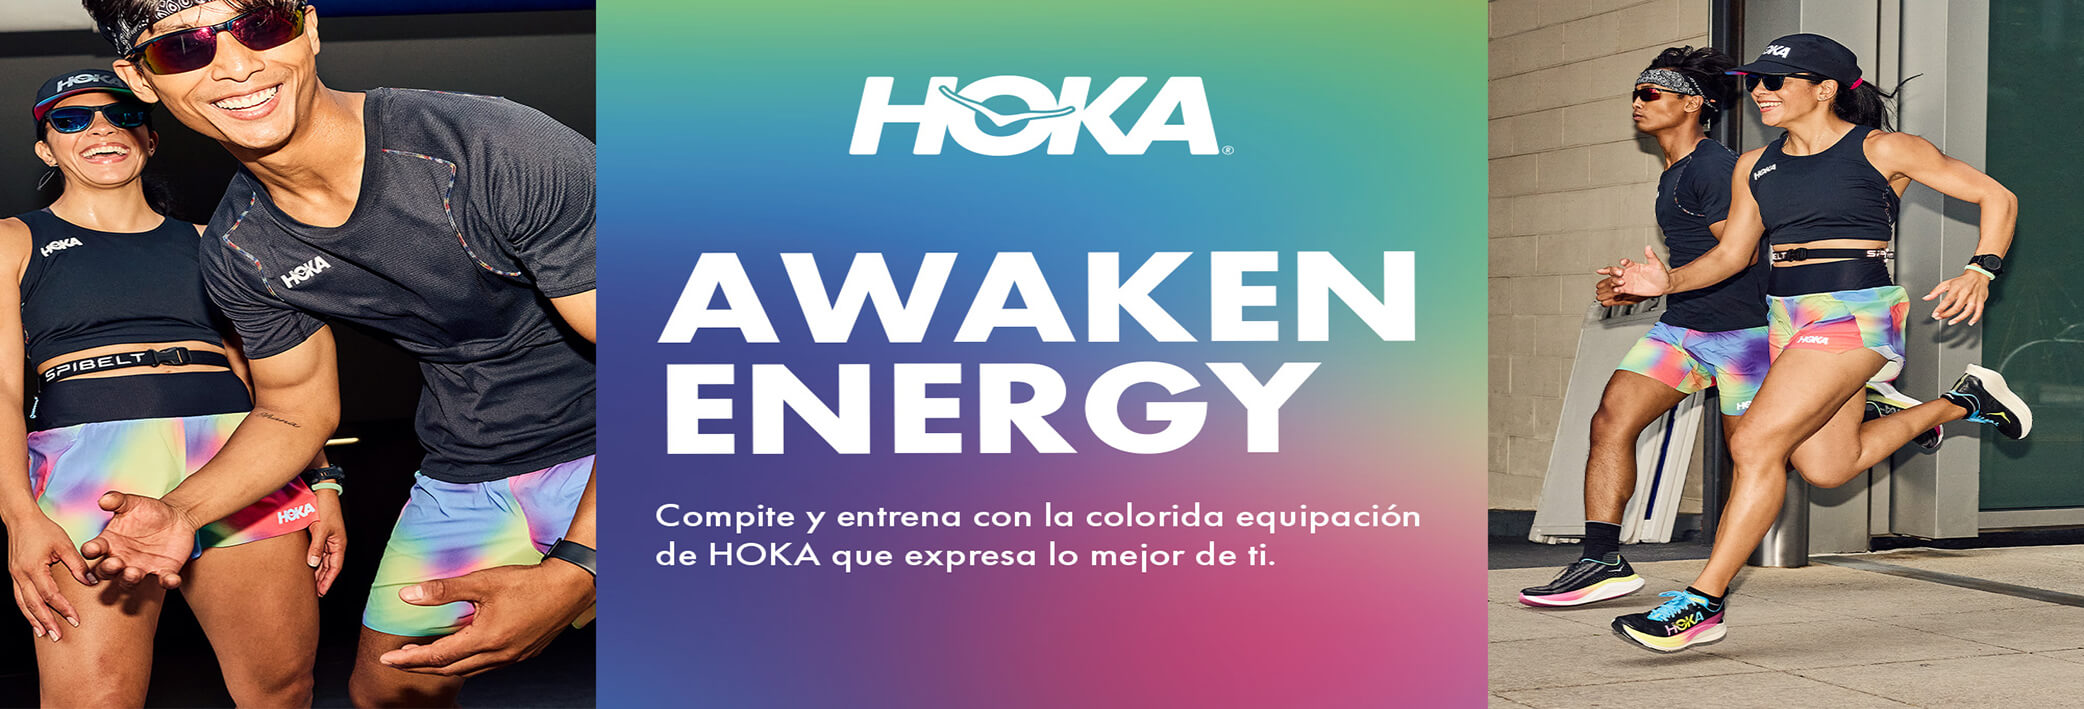 Hoka Awaken Energy